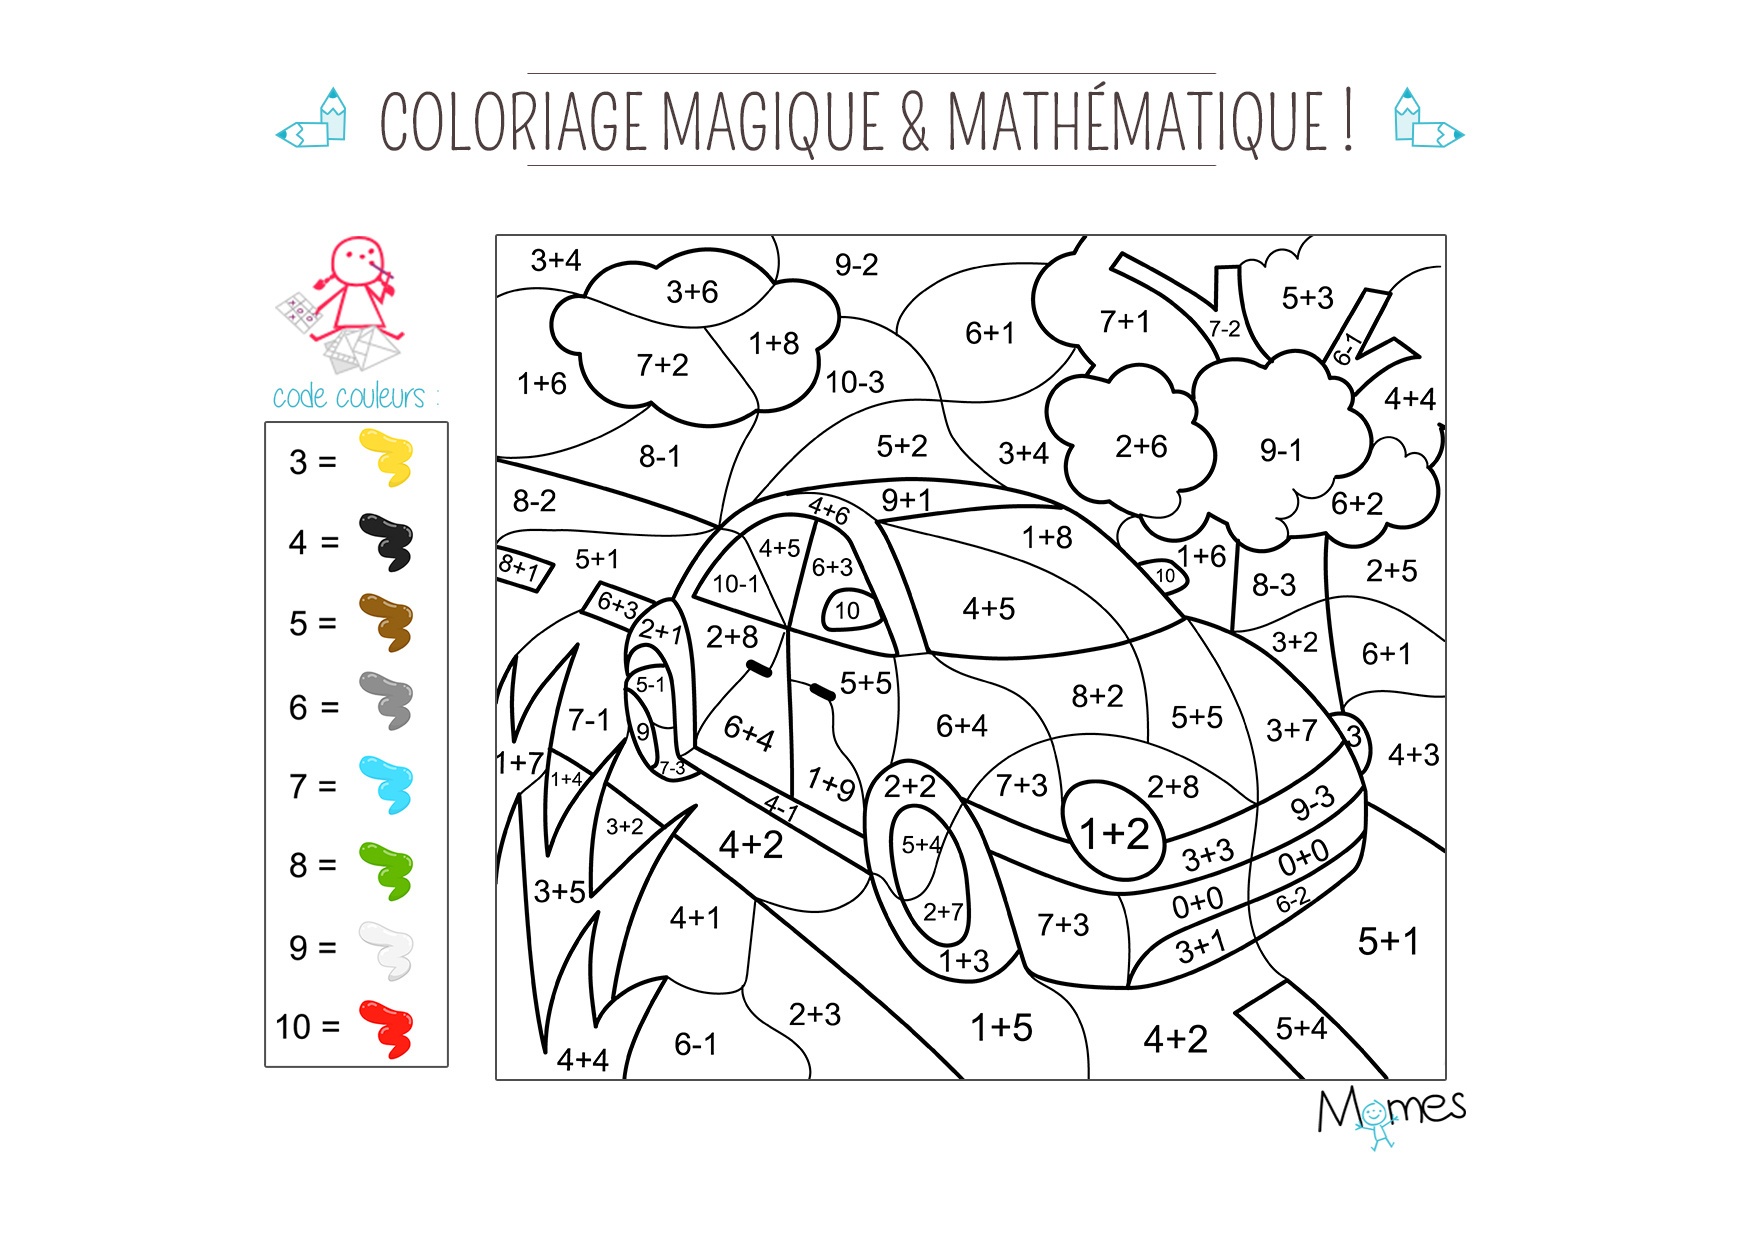 Coloriage magique et mathematique la voiture